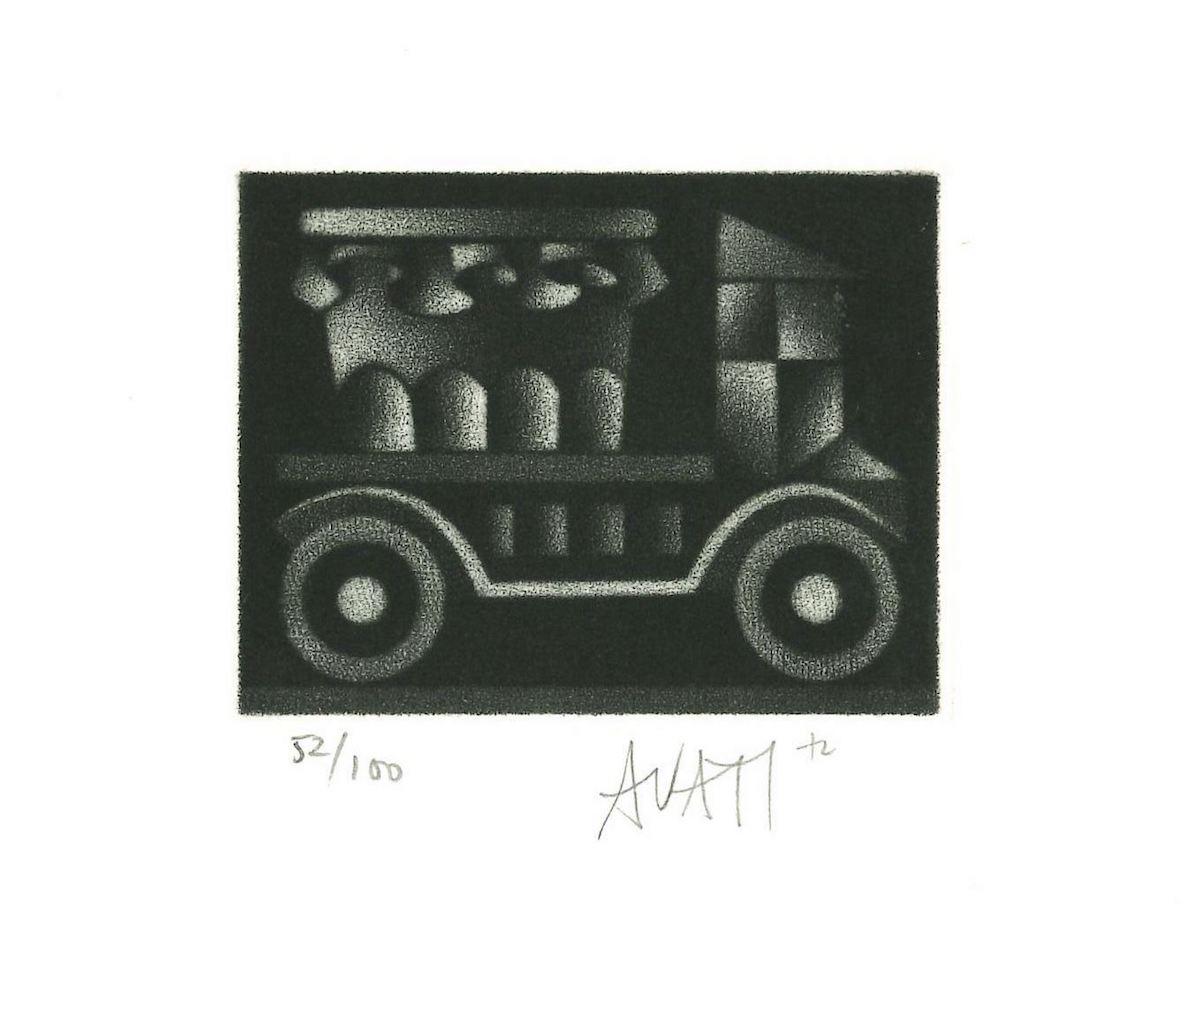 Véhicule est une gravure originale sur papier, réalisée par l'artiste et graveur français maître Mario Avati (1921-2009).

Signé à la main en bas à droite et numéroté en bas à gauche au crayon. Edition de 52/100 tirages.

En excellent état.

L'œuvre